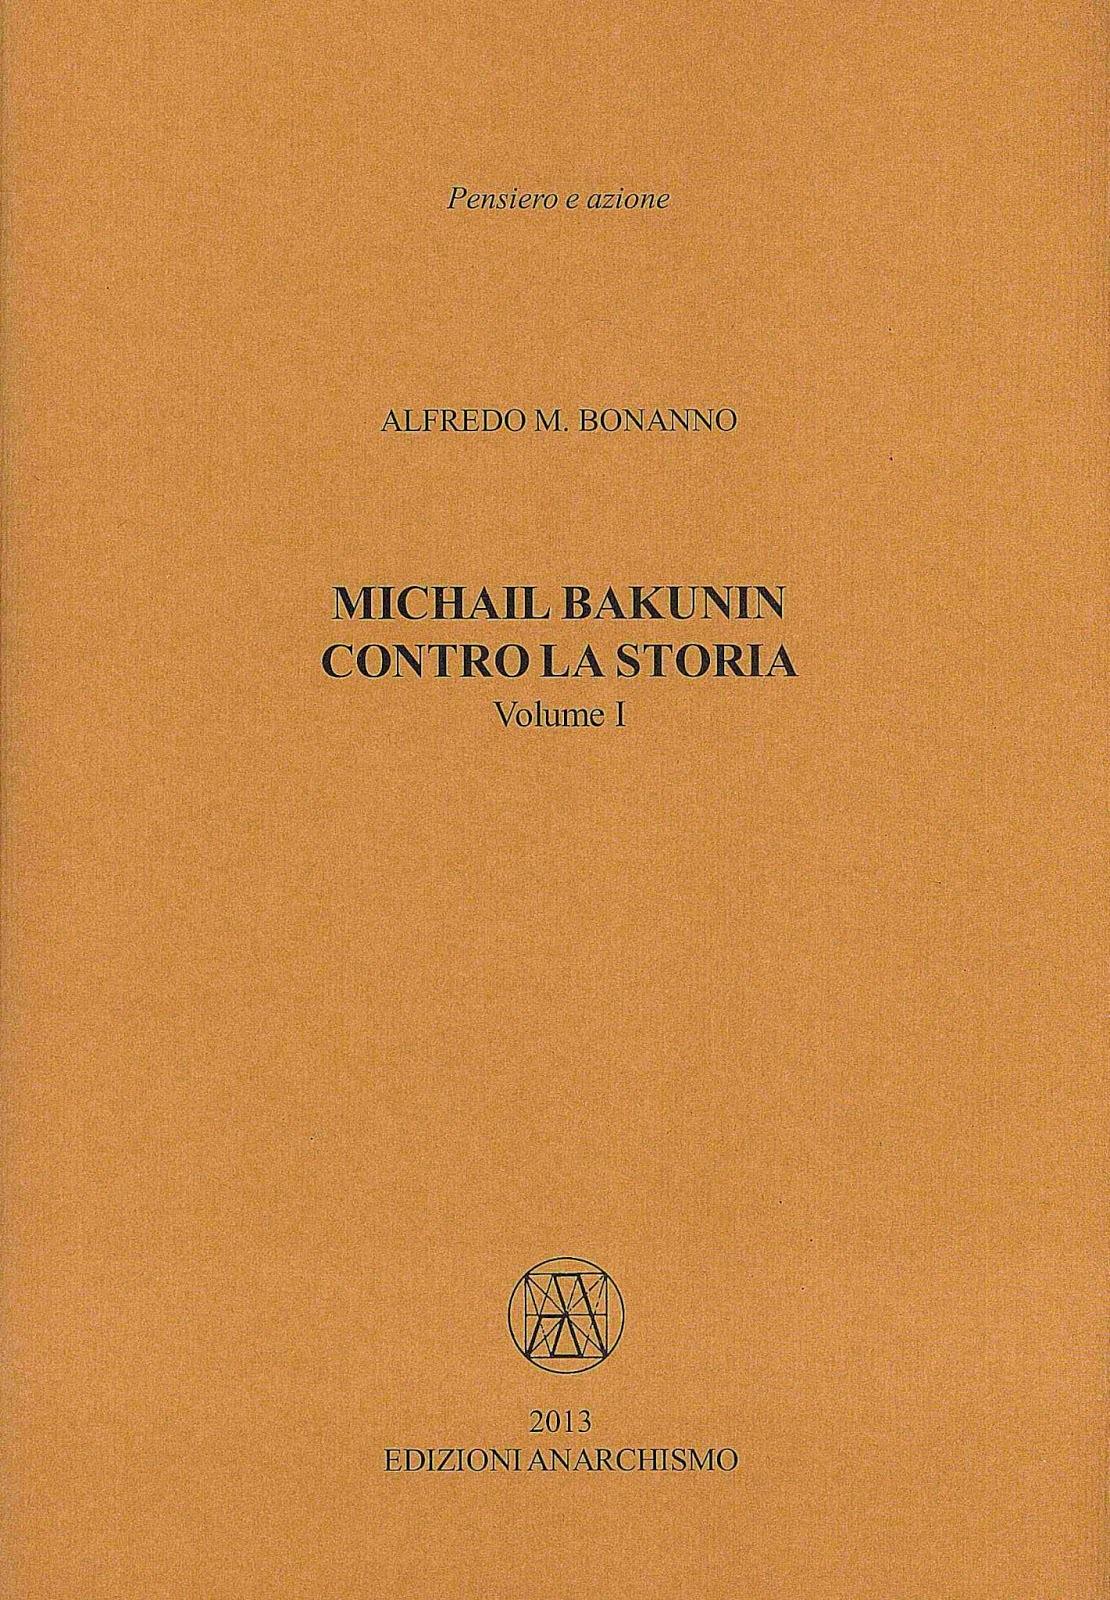 m-b-michail-bakunin-contro-la-storia-x-cover.jpg